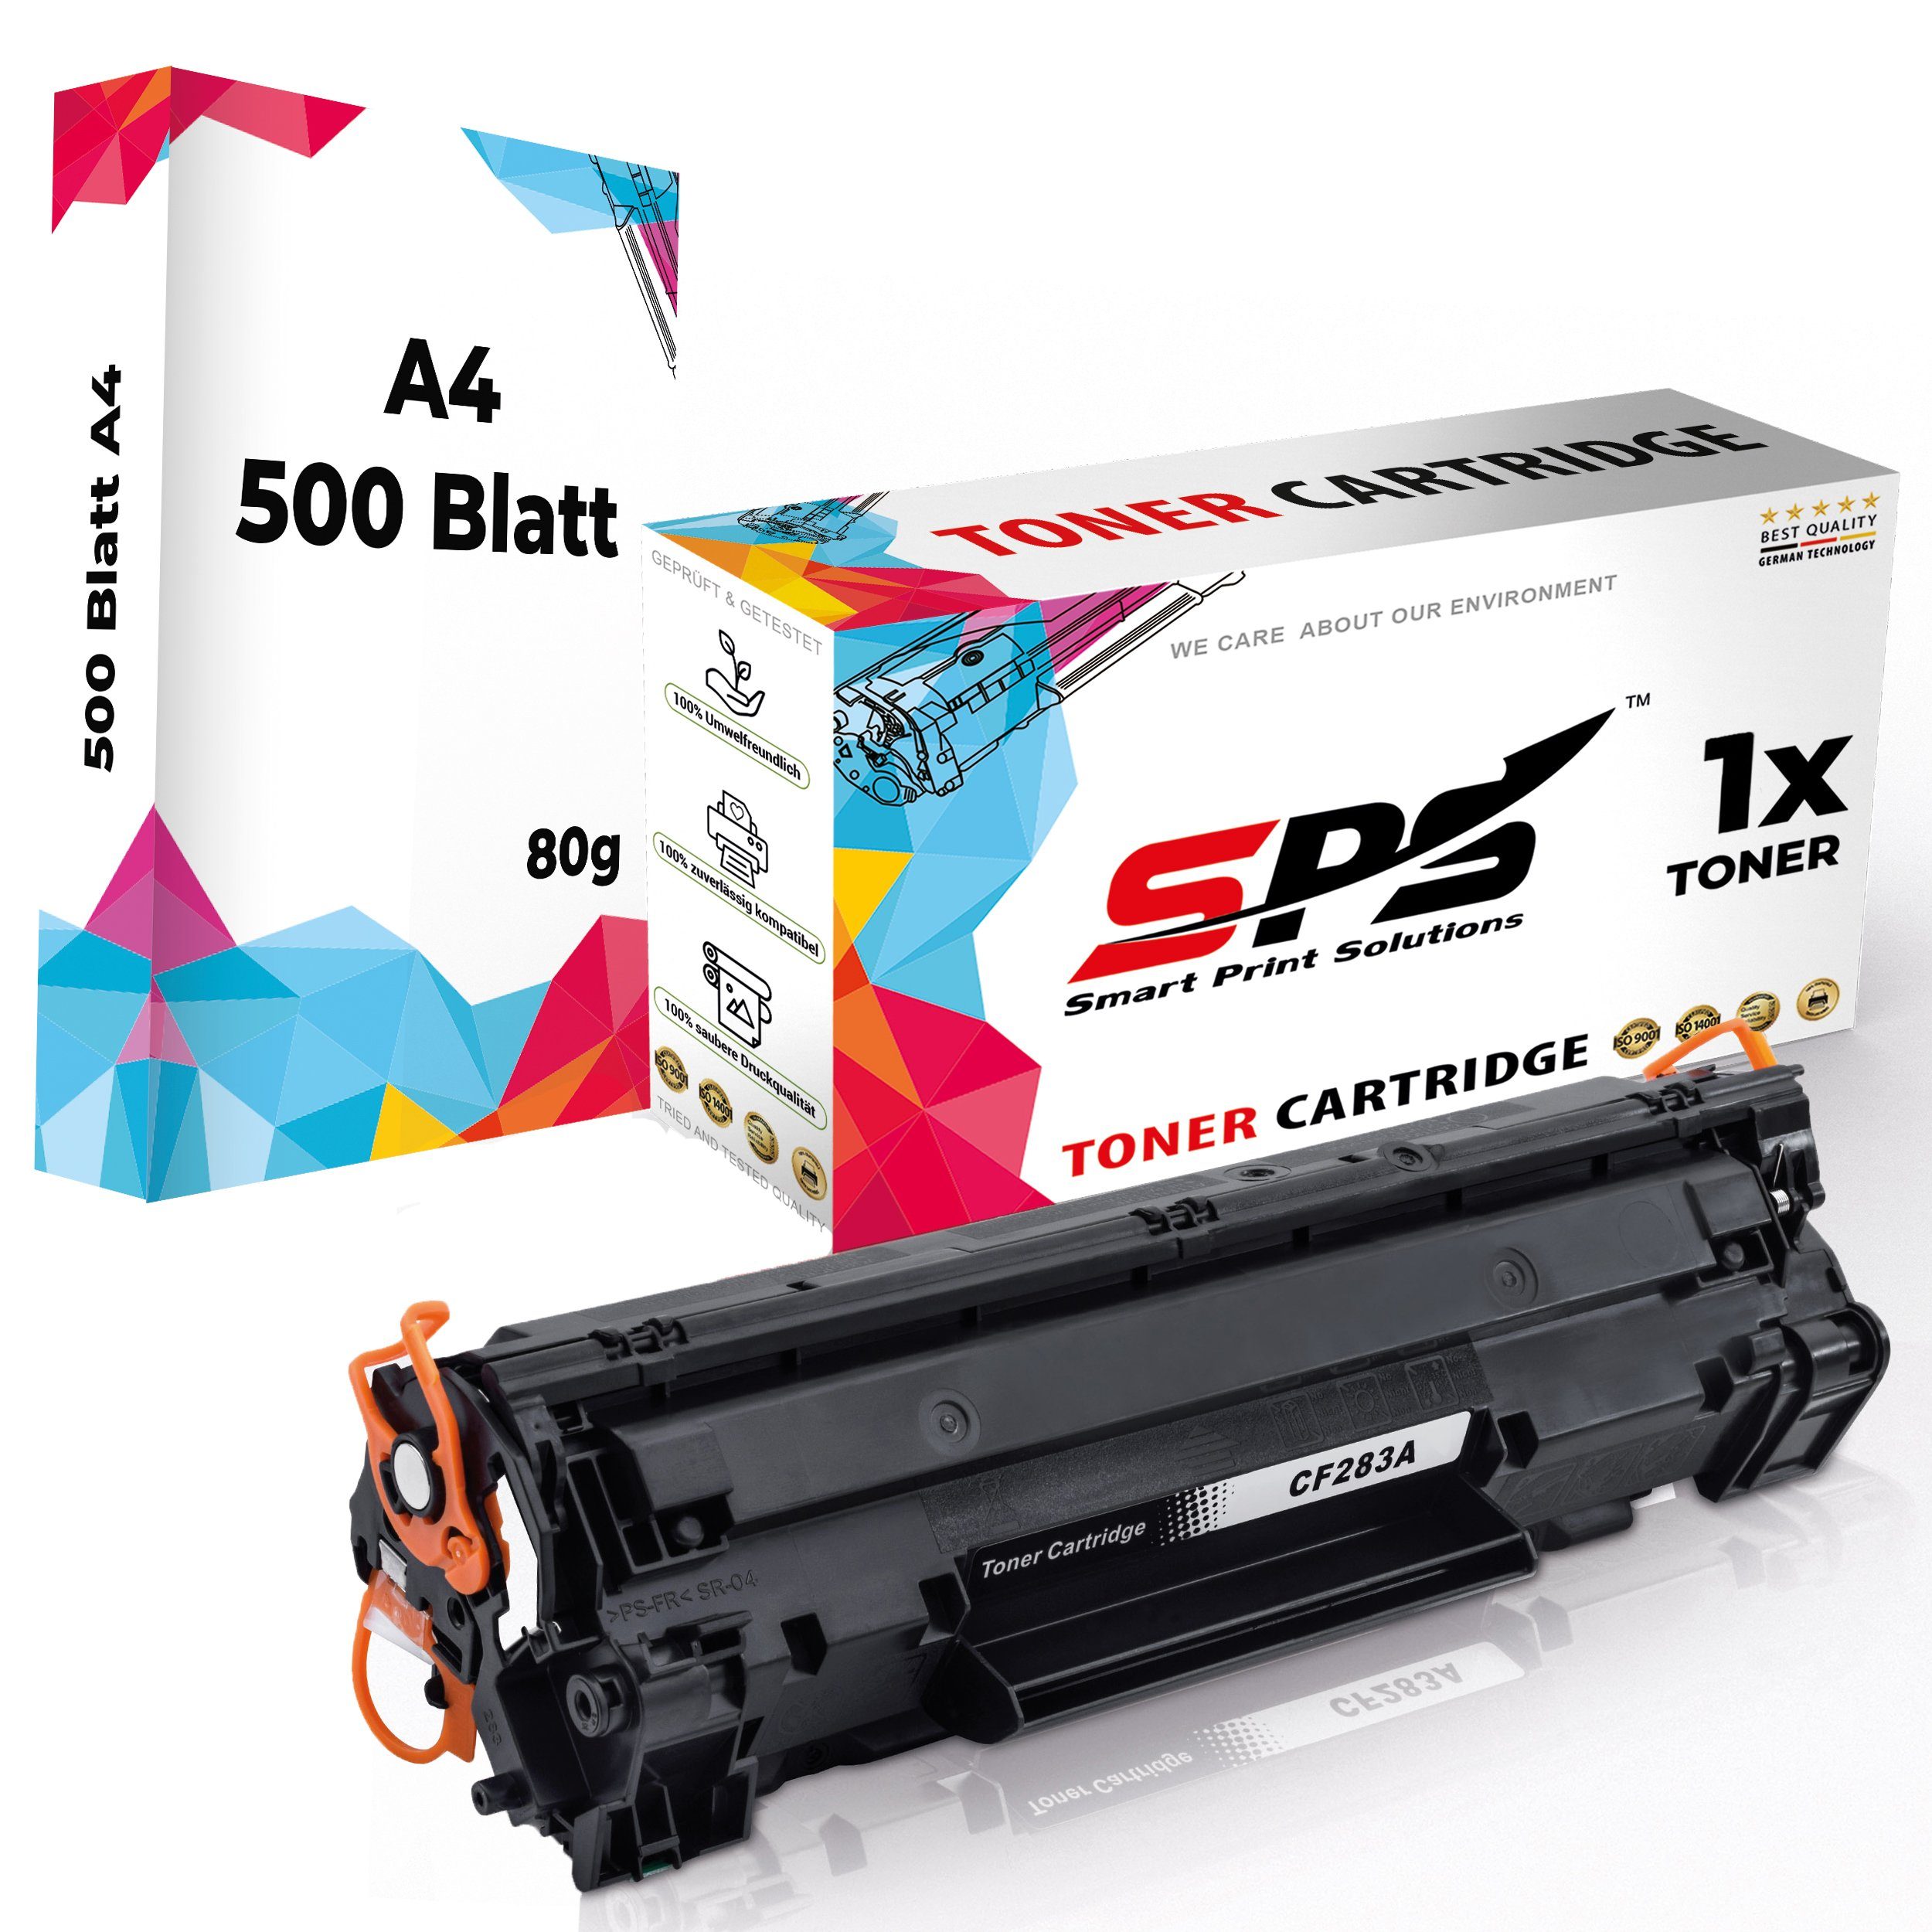 A4 Laserjet Kompatibel MFP Schwarz) für Papier, SPS Toner 1x Pro Pack HP (1x CF283A, Tonerkartusche 83A M127 + (1er